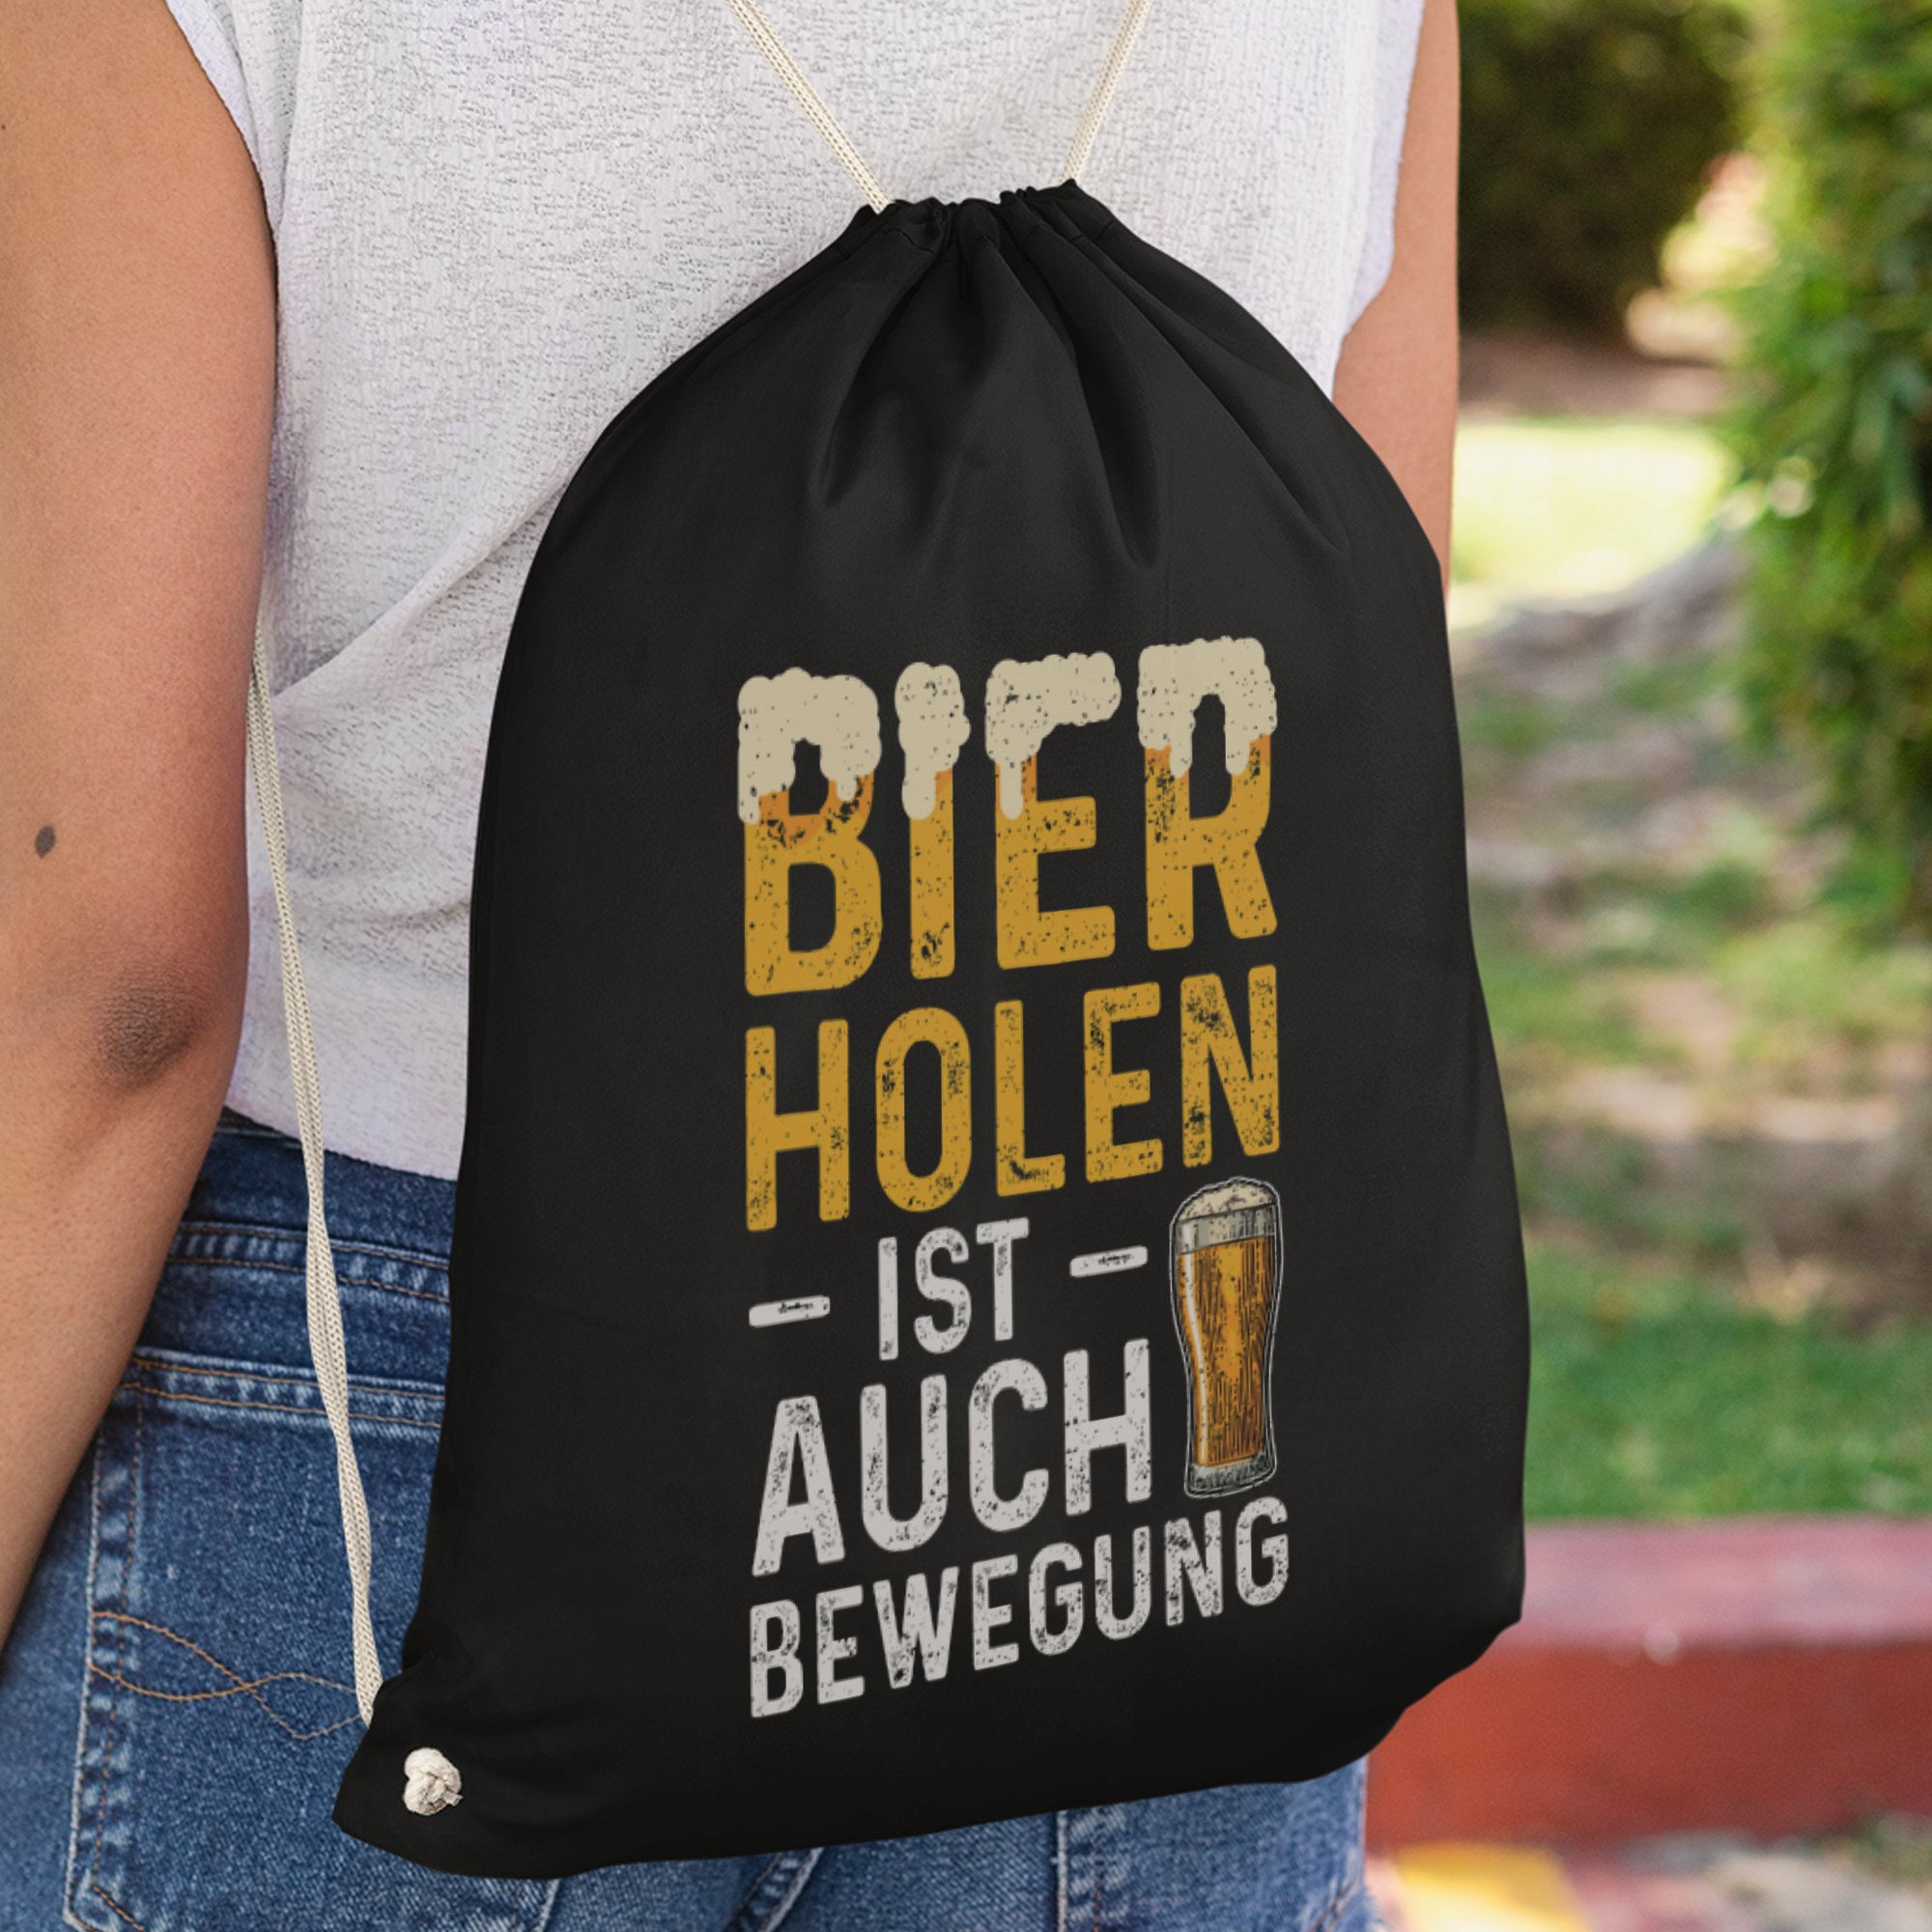 Bier Holen Ist Auch Bewegung Turnbeutel - DESIGNSBYJNK5.COM